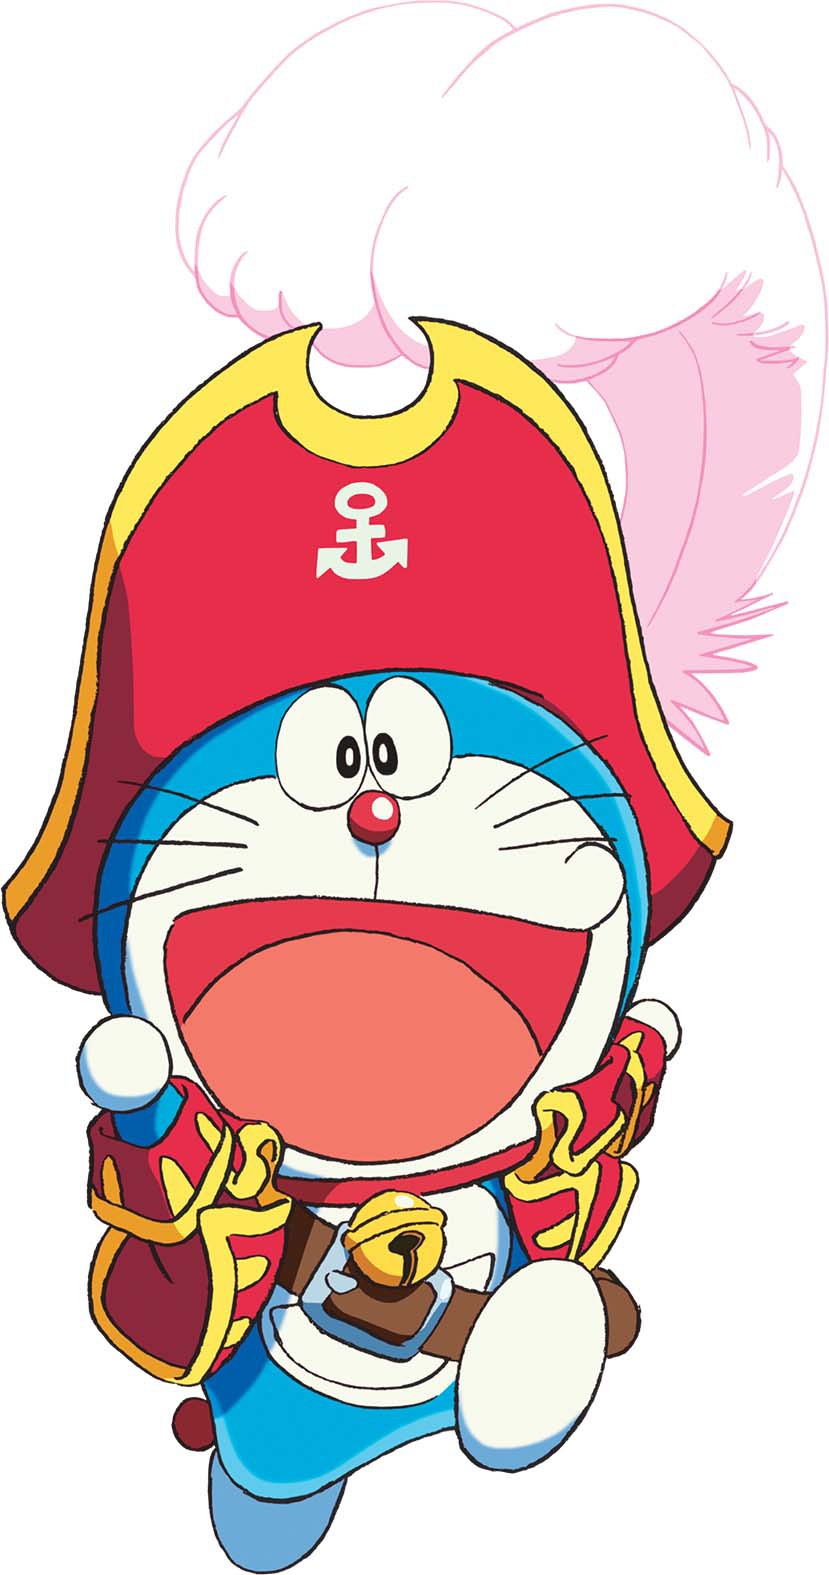 Bạn đã từng nghe về Đảo Giấu Vàng của Doraemon và Nobita chưa? Đây là một trong những bộ phim kinh điển về đôi bạn thân này đấy. Nếu bạn muốn tìm hiểu thêm về cuộc phiêu lưu trên hòn đảo bí ẩn này, hãy xem những hình ảnh liên quan.